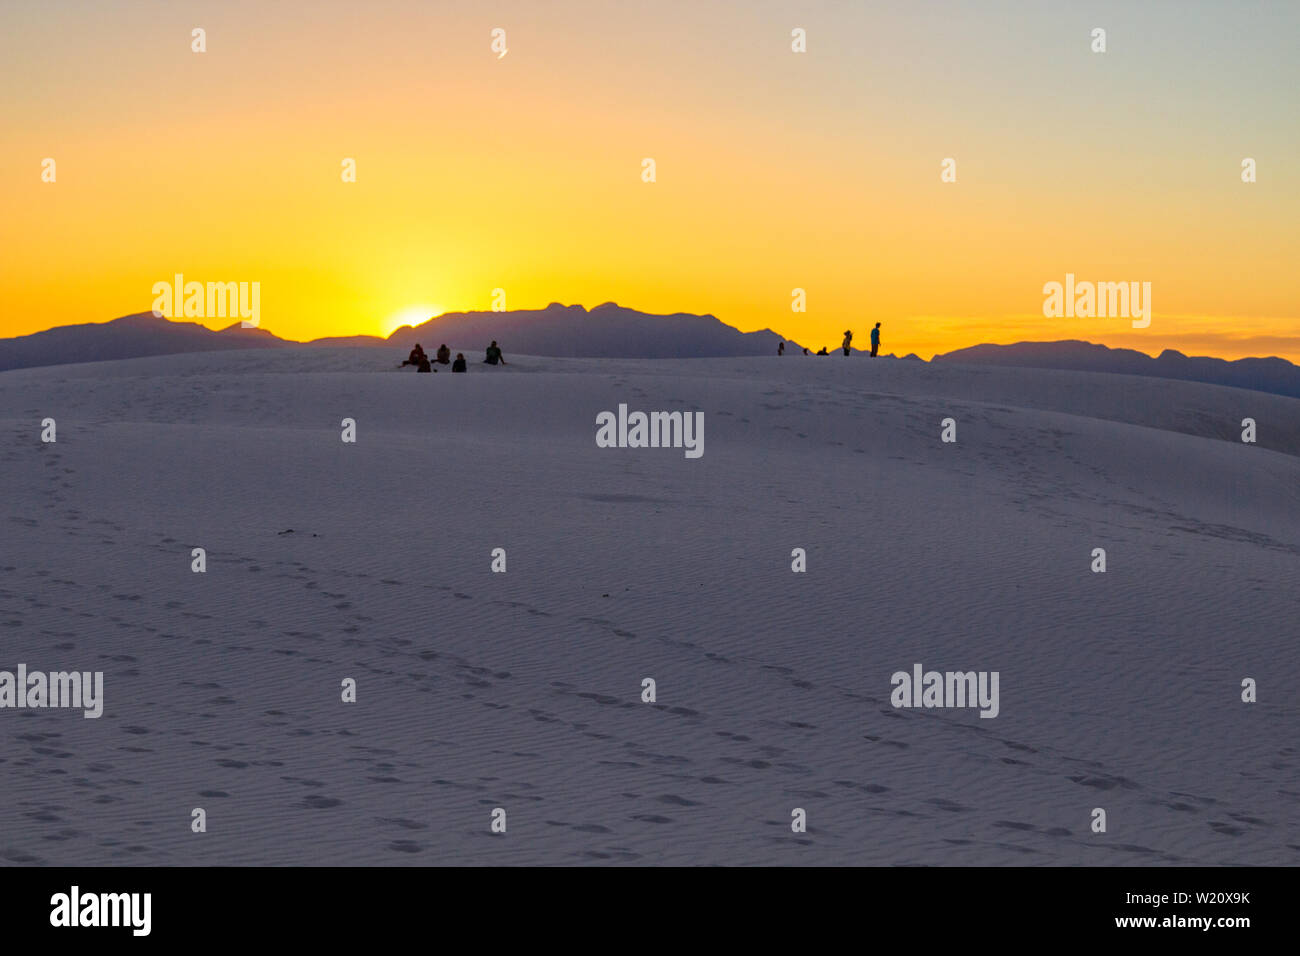 Touristen beobachten EINEN Sonnenuntergang in der Wüste. Touristen stehen auf einer Sanddüne und bewundern den Sonnenuntergang am White Sands in New Mexico. Stockfoto